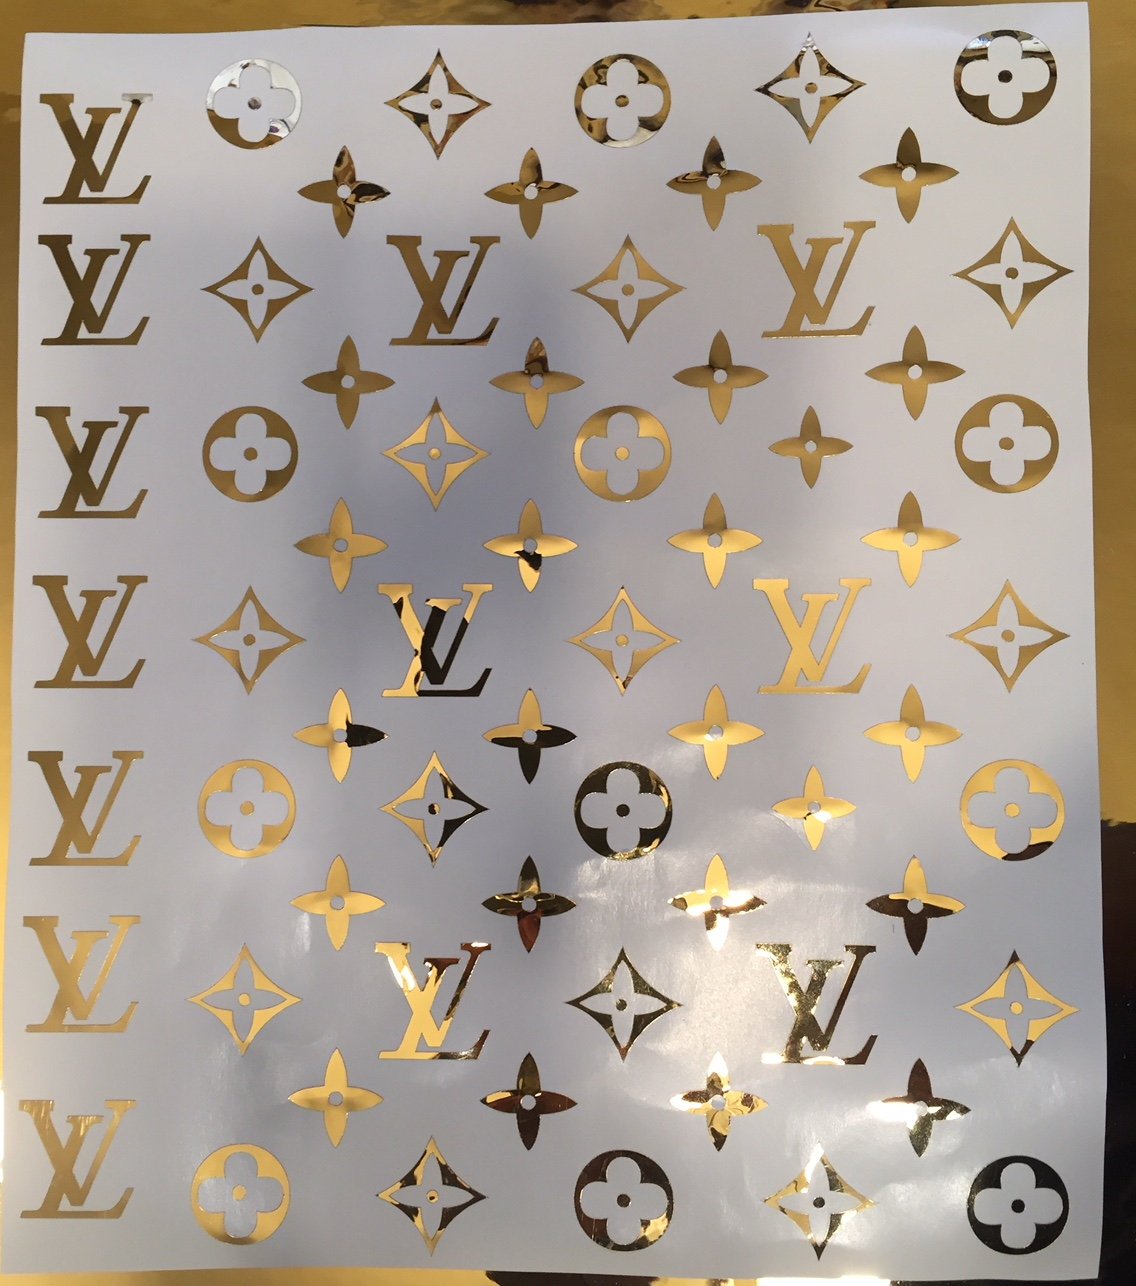 Louis Vuitton Image Pattern